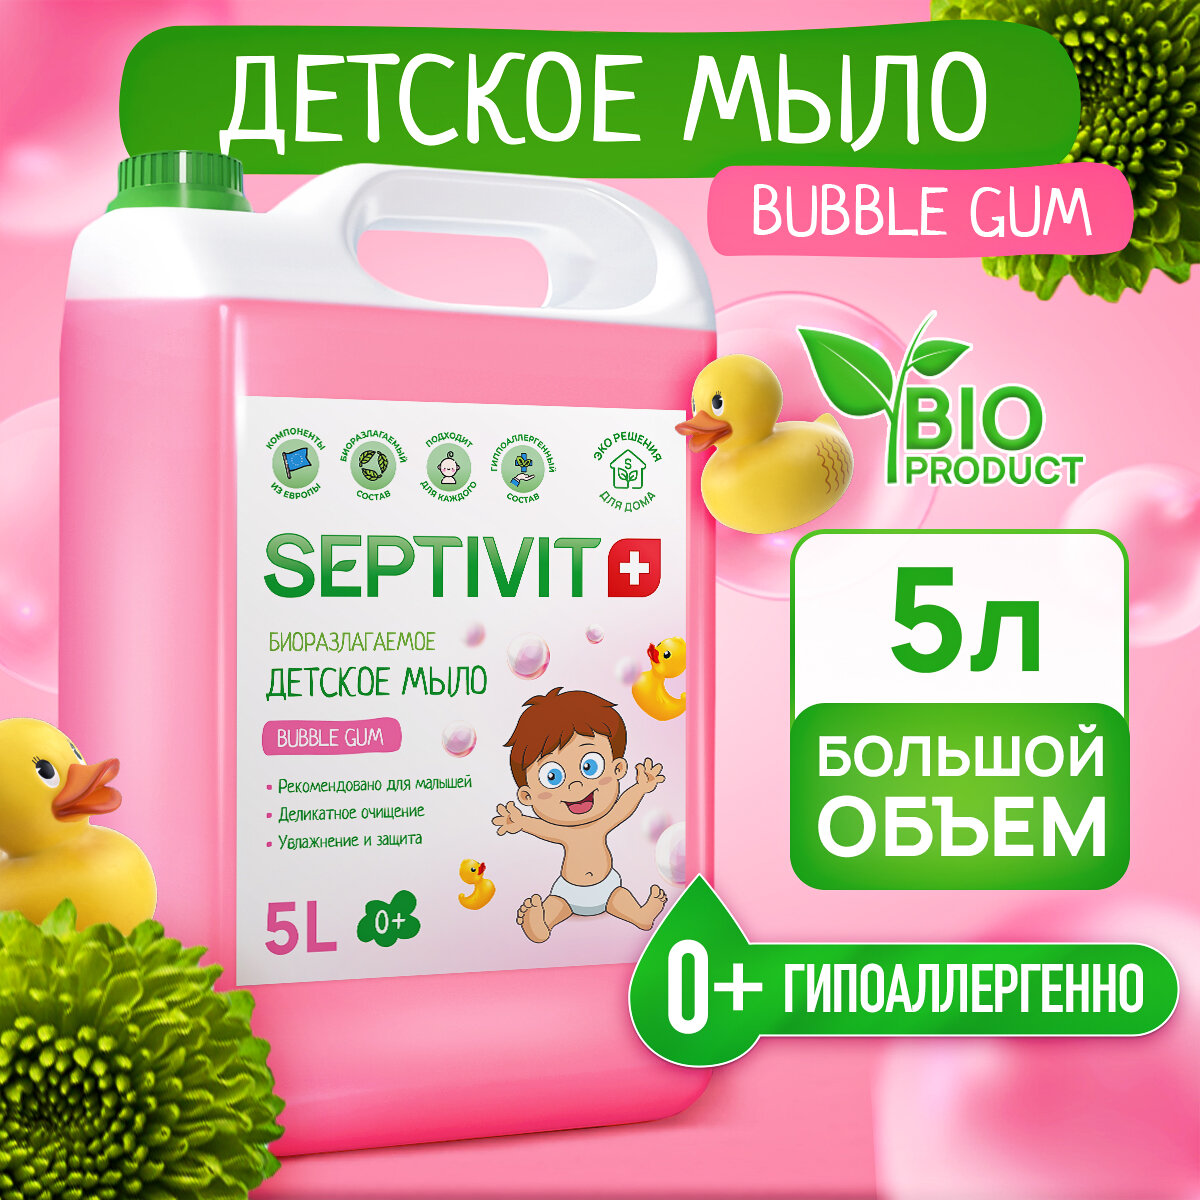 Детское жидкое мыло для рук Bubble Gum SEPTIVIT Premium / Мыло туалетное Септивит / Детское мыло 5л